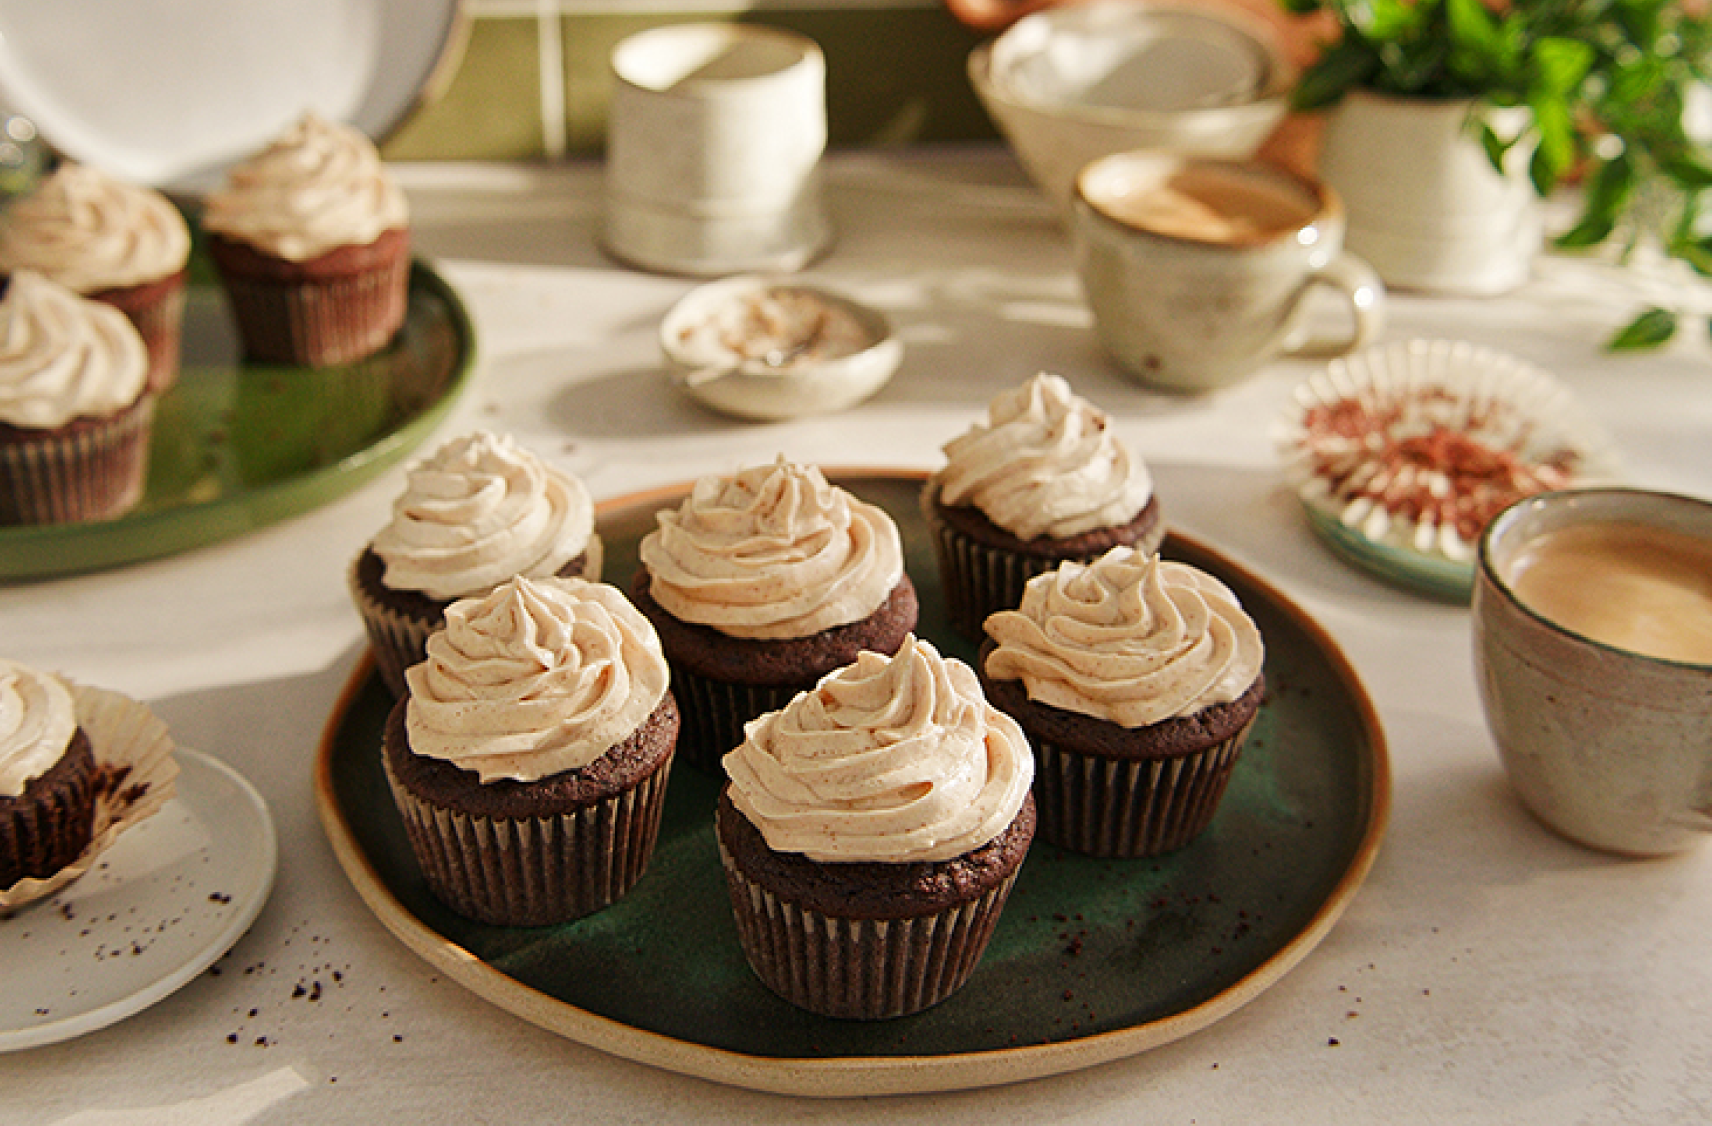 Des cupcakes végétaliens au chocolat avec glaçage au beurre d’arachide sur une grande assiette ronde.